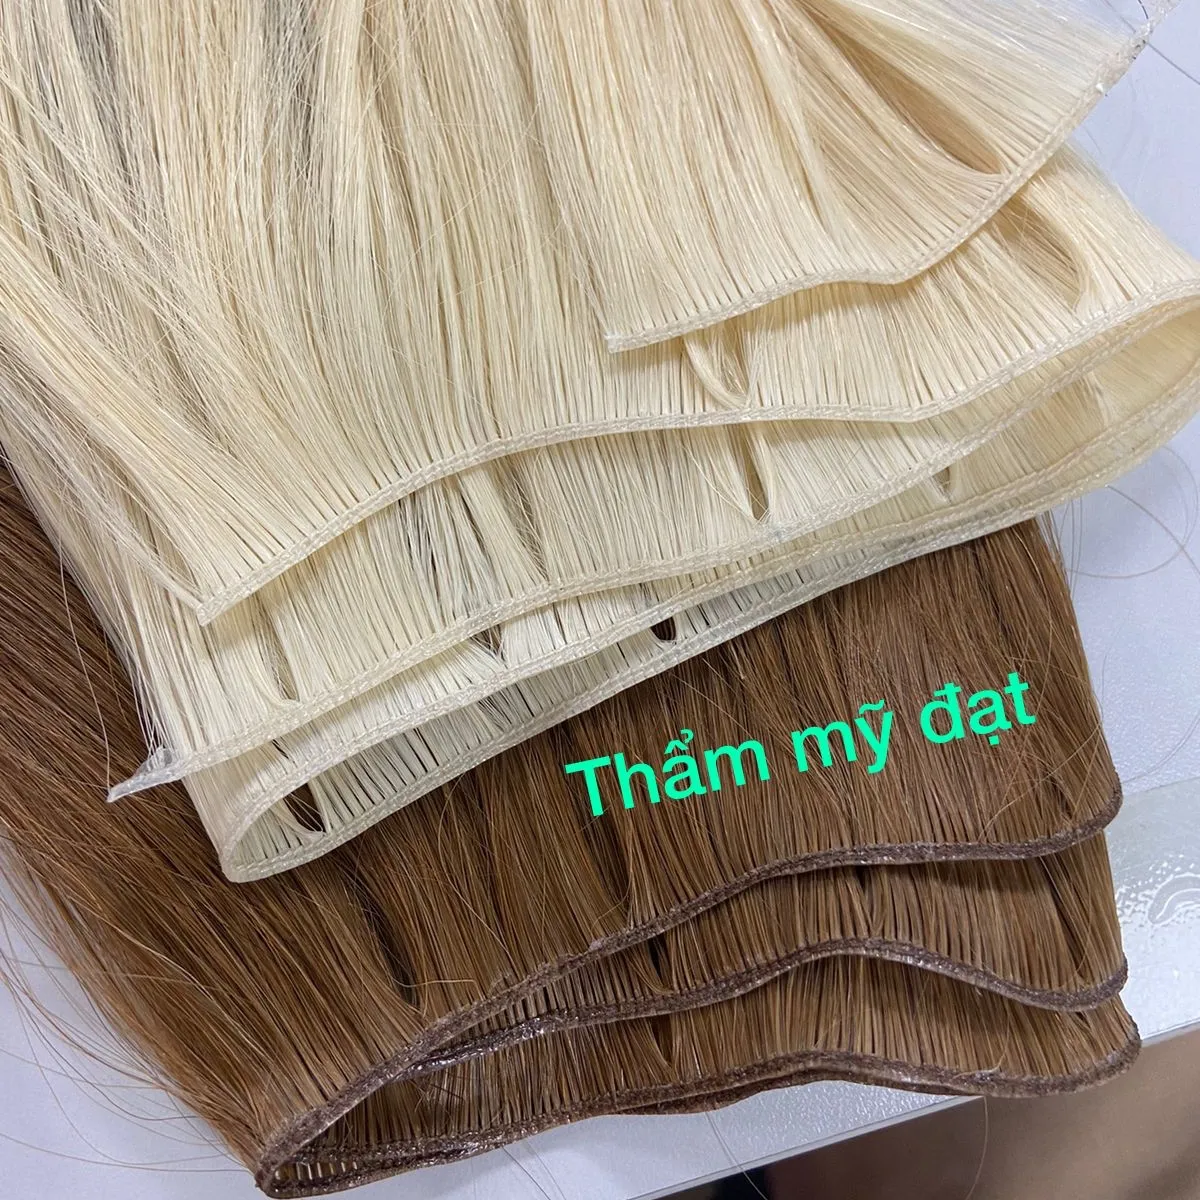 عبقرية لحمة سوبر مزدوجة الشعر نفس إهاب الانحياز الخام شعر بشري فيتنامي LUXSHINE روبي نسج حزمة